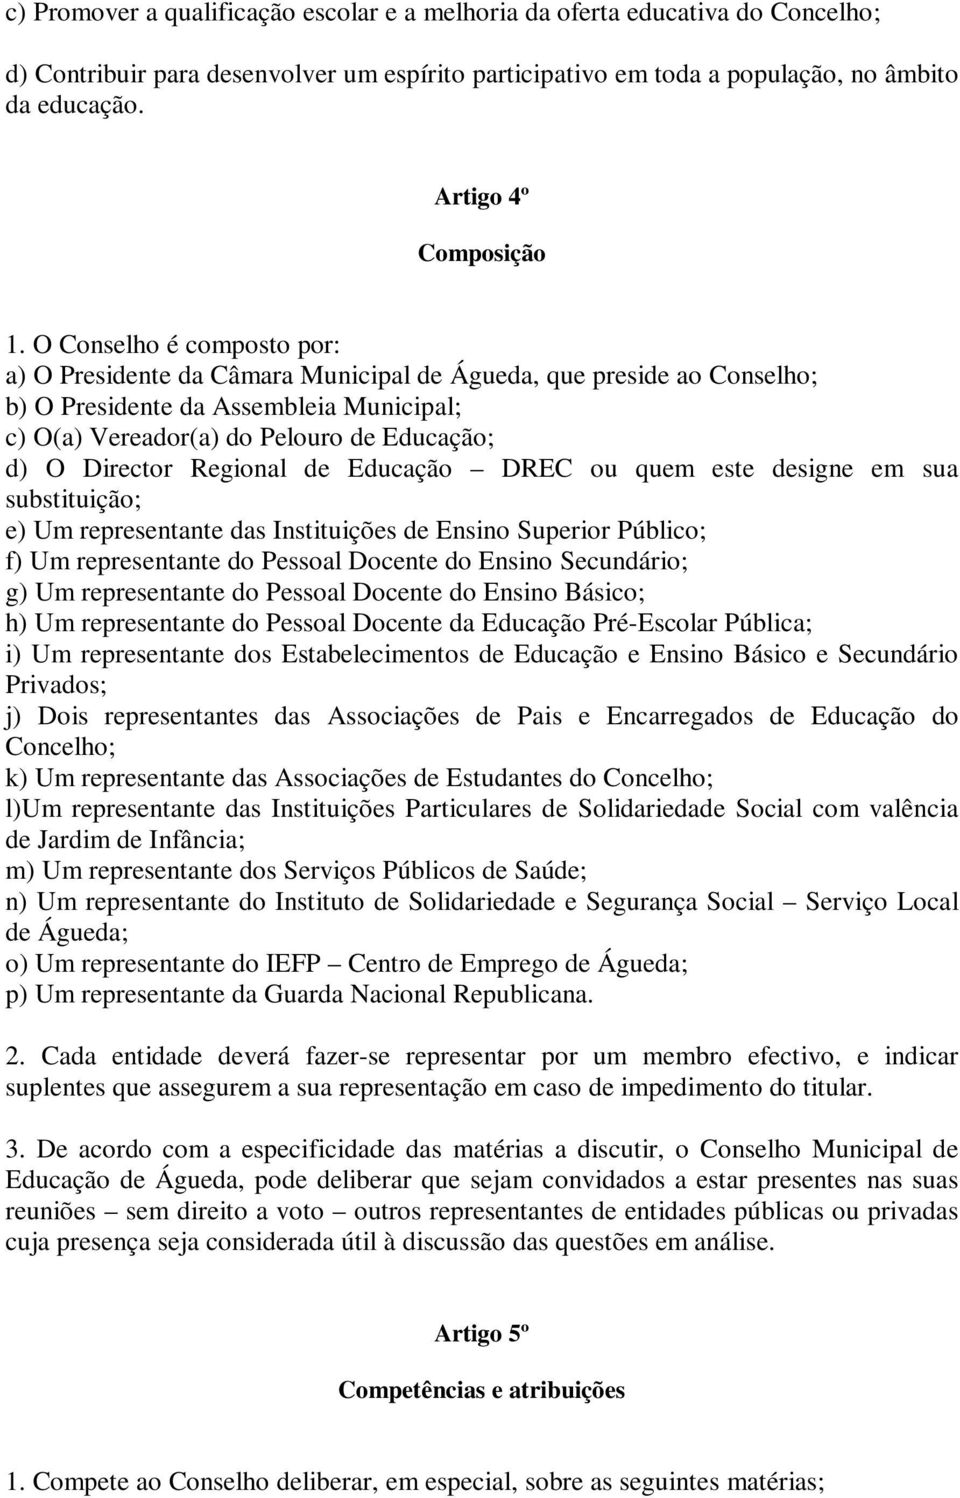 O Conselho é composto por: a) O Presidente da Câmara Municipal de Águeda, que preside ao Conselho; b) O Presidente da Assembleia Municipal; c) O(a) Vereador(a) do Pelouro de Educação; d) O Director